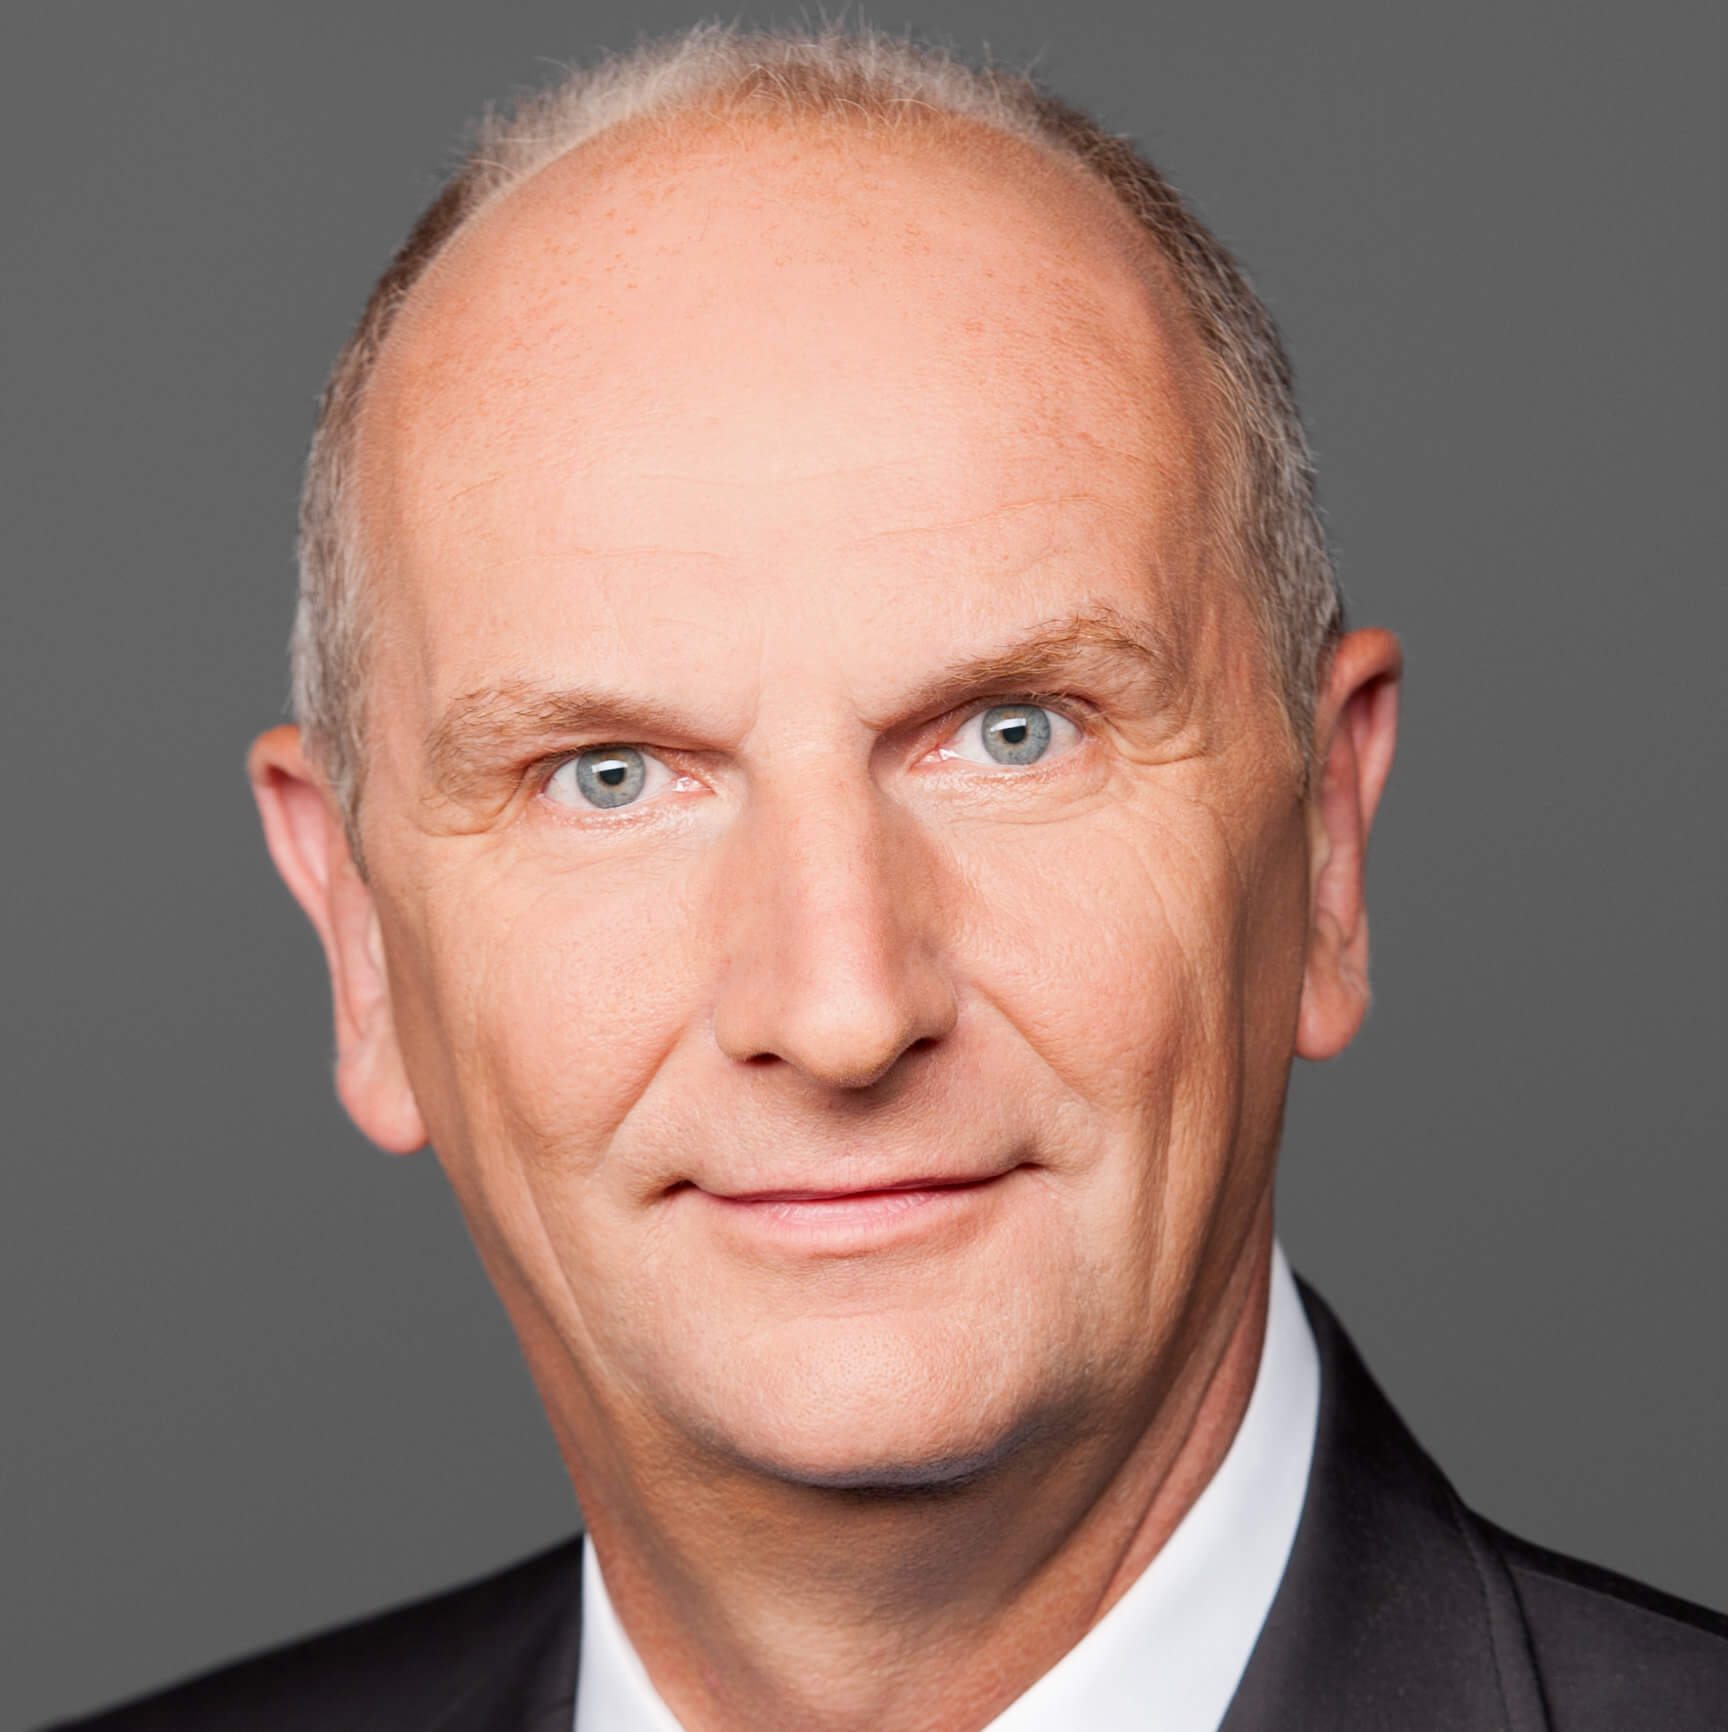 Dr. Dietmar Woidke